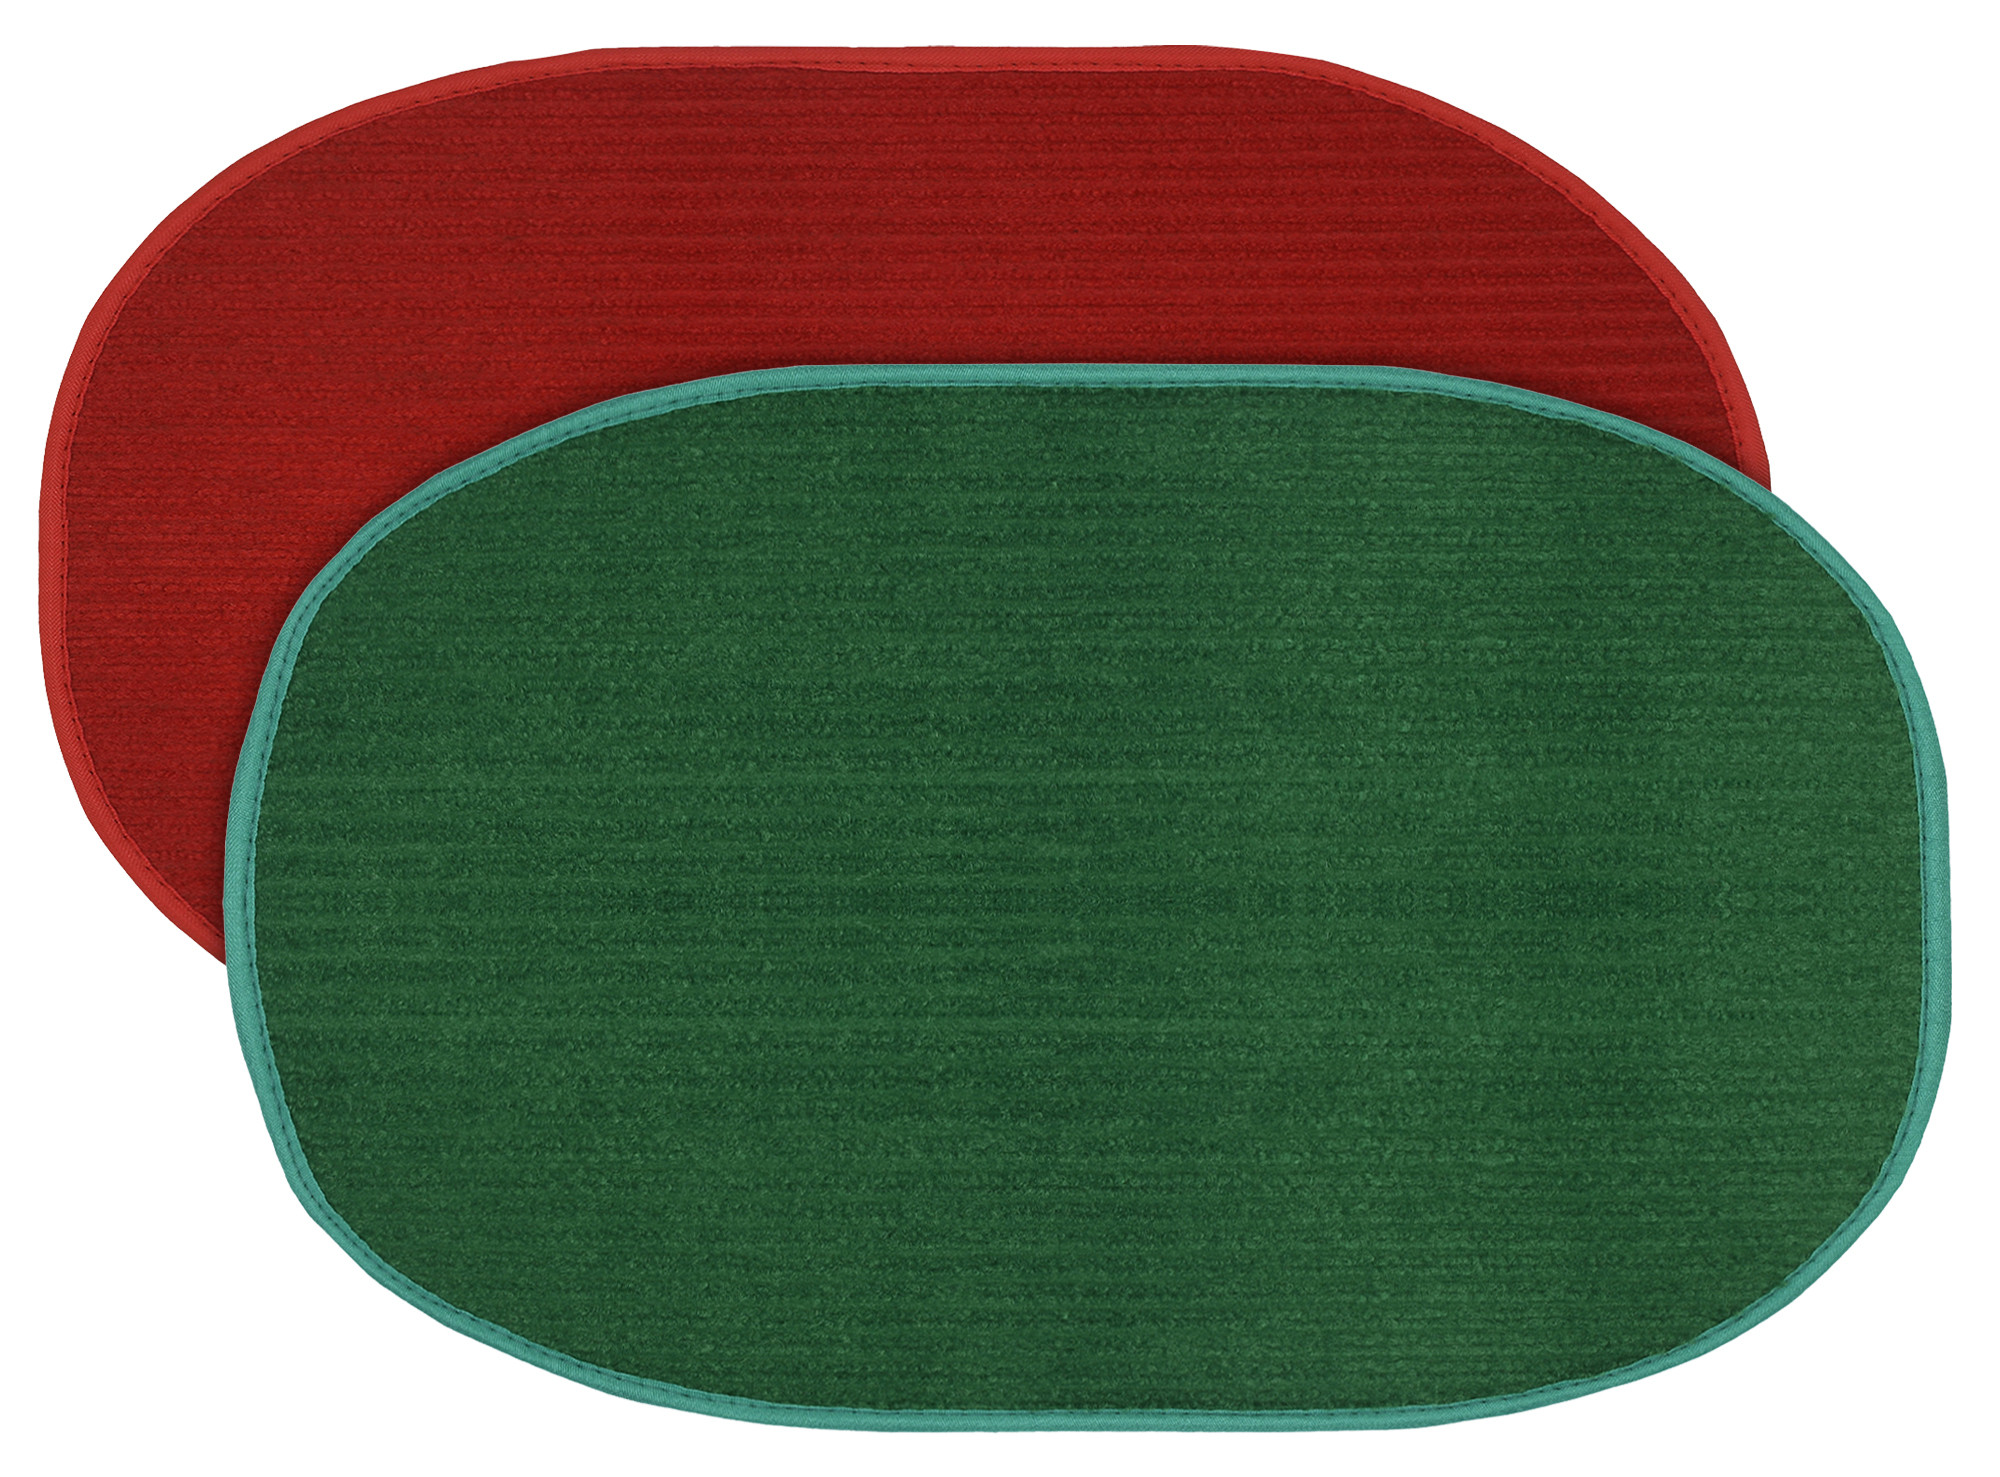 Kuber Industries Oval Shape Durable Microfiber Door Mat, Heavy Duty Doormat, Indoor Outdoor, Easy Clean, Waterproof, Low-Profile Mats for Entry, Patio, Garage (Set Of 2,14'' x 23'',Red & Green)-KUBMRT12099